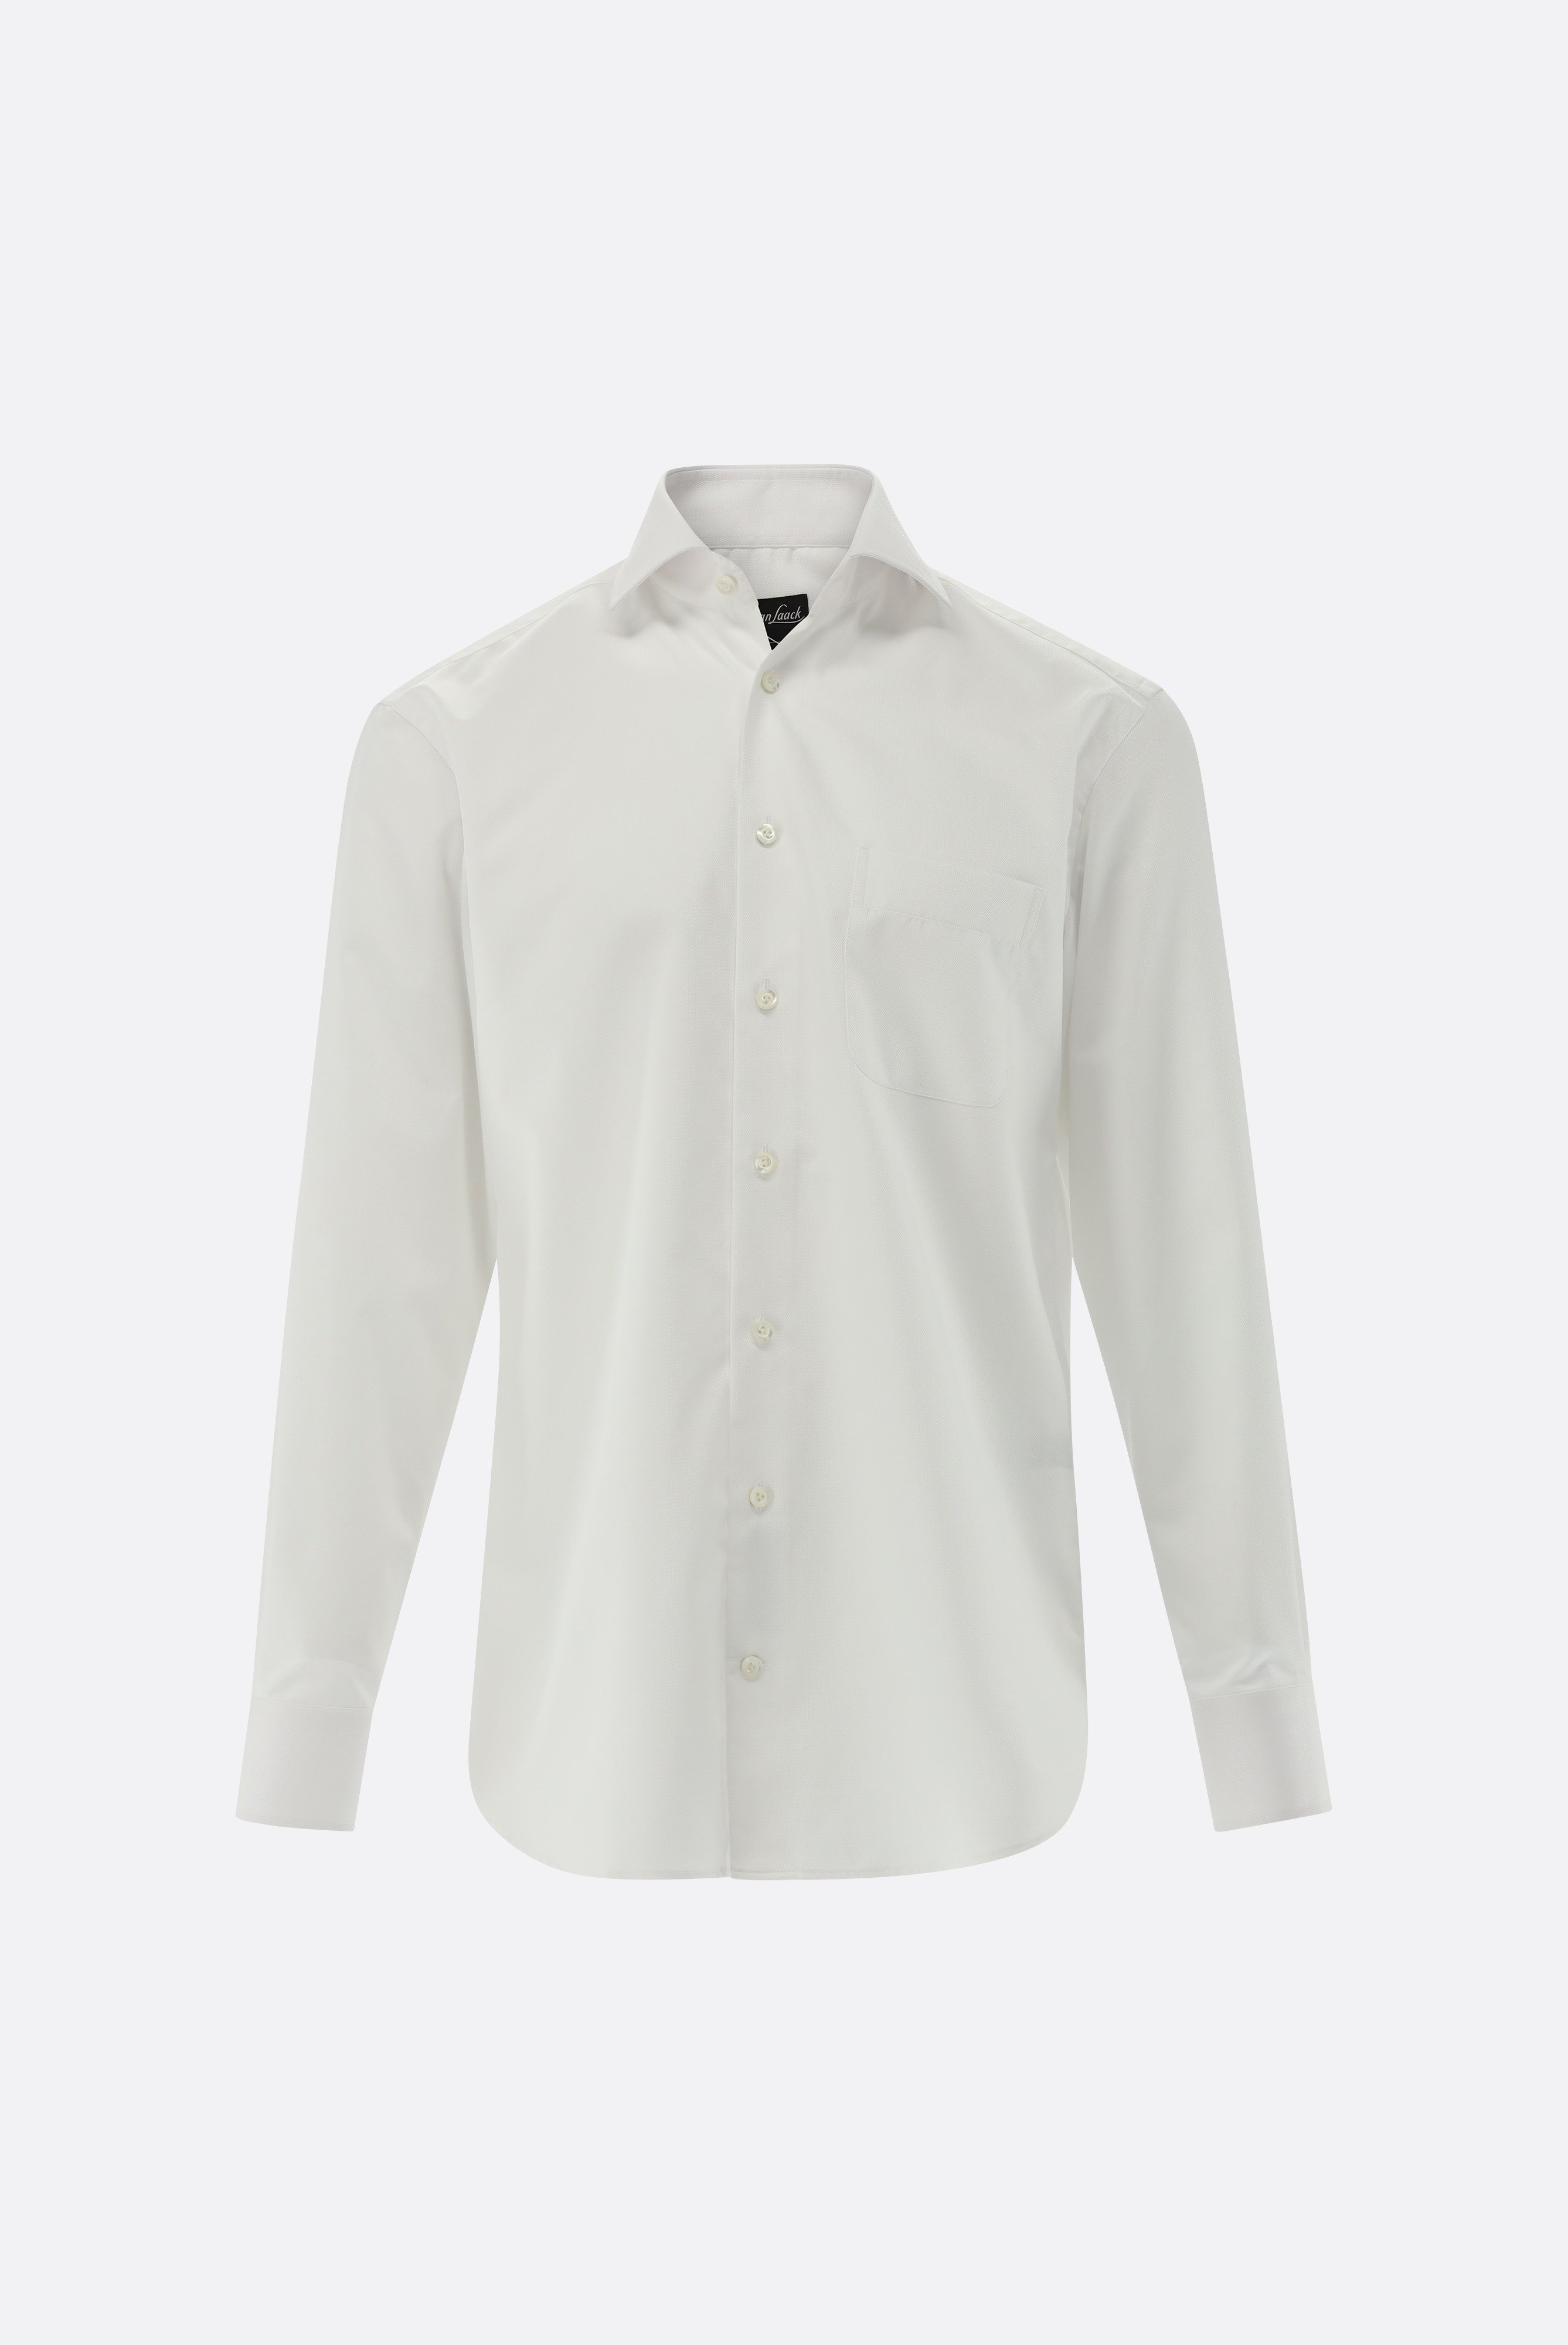 Bügelleichte Hemden+Bügelfreies Twil Hemd mit Struktur Comfort Fit+20.2021.BQ.150301.000.43